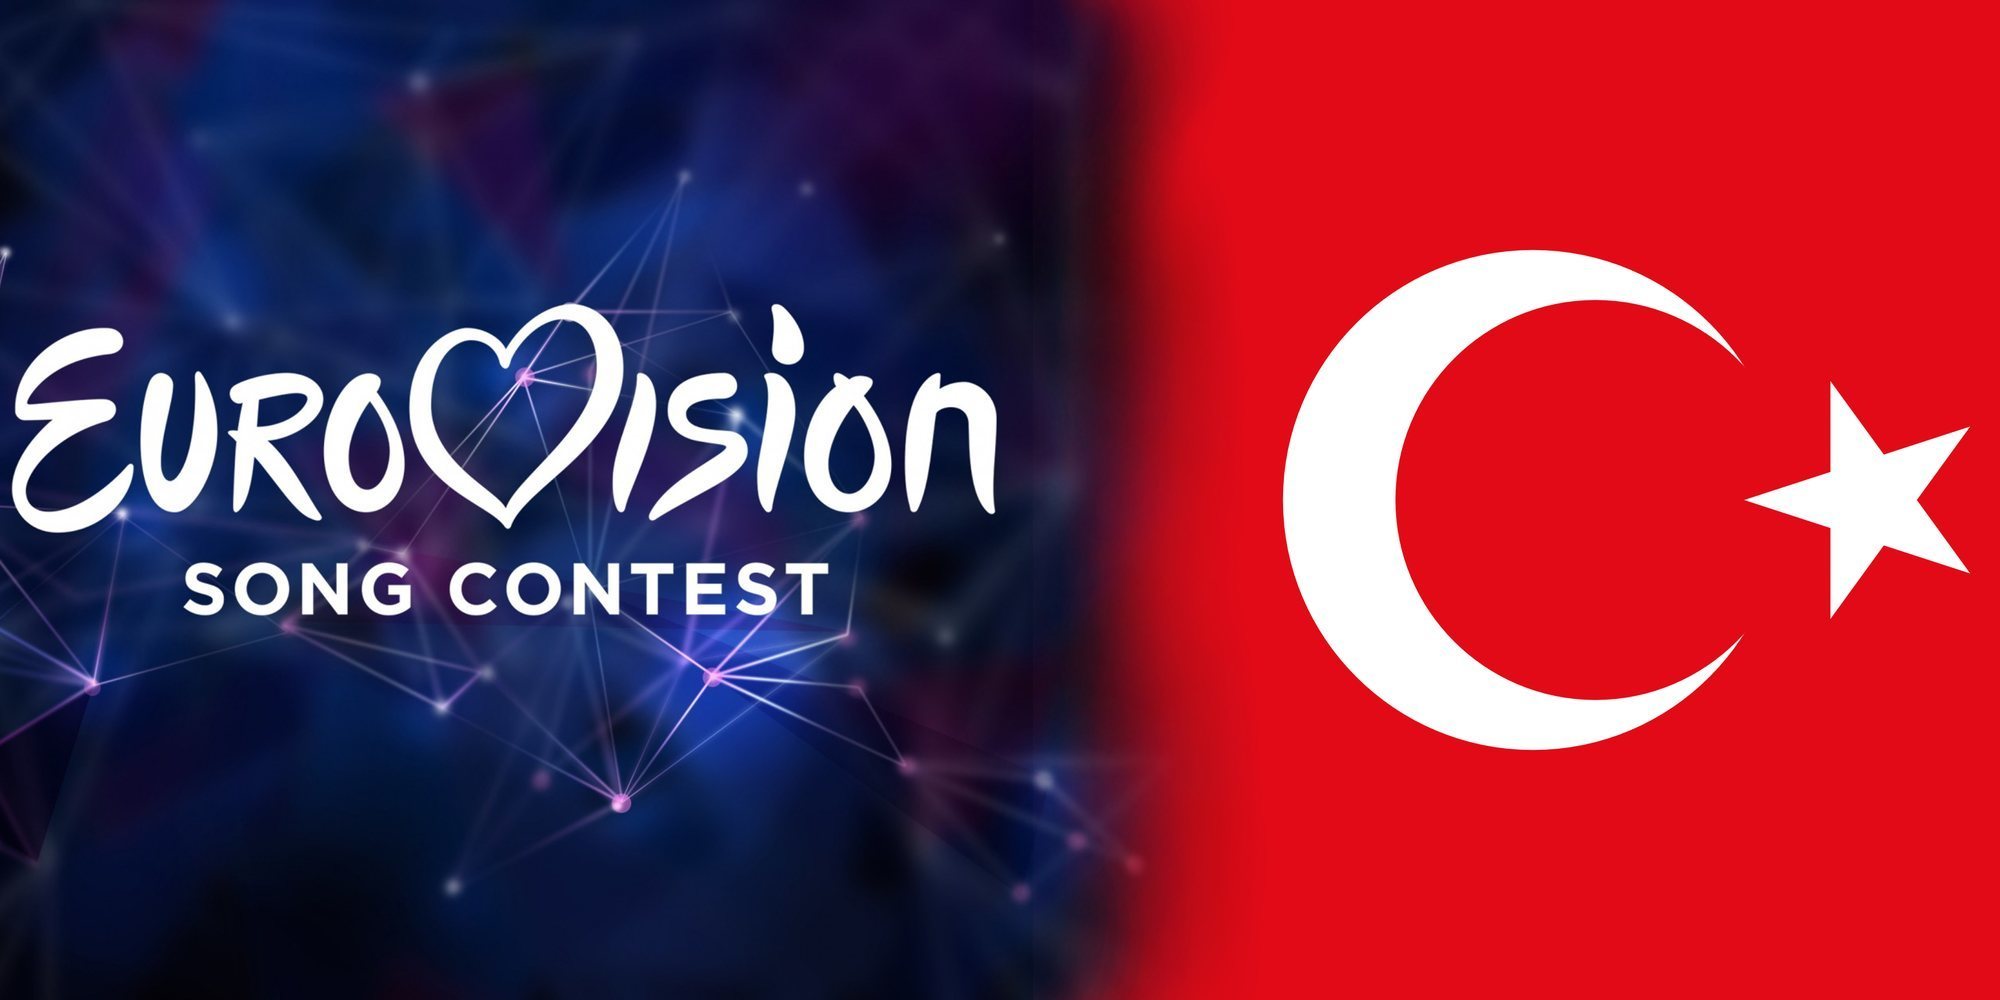 Los motivos homófobos por los que Turquía no participará más en Eurovisión